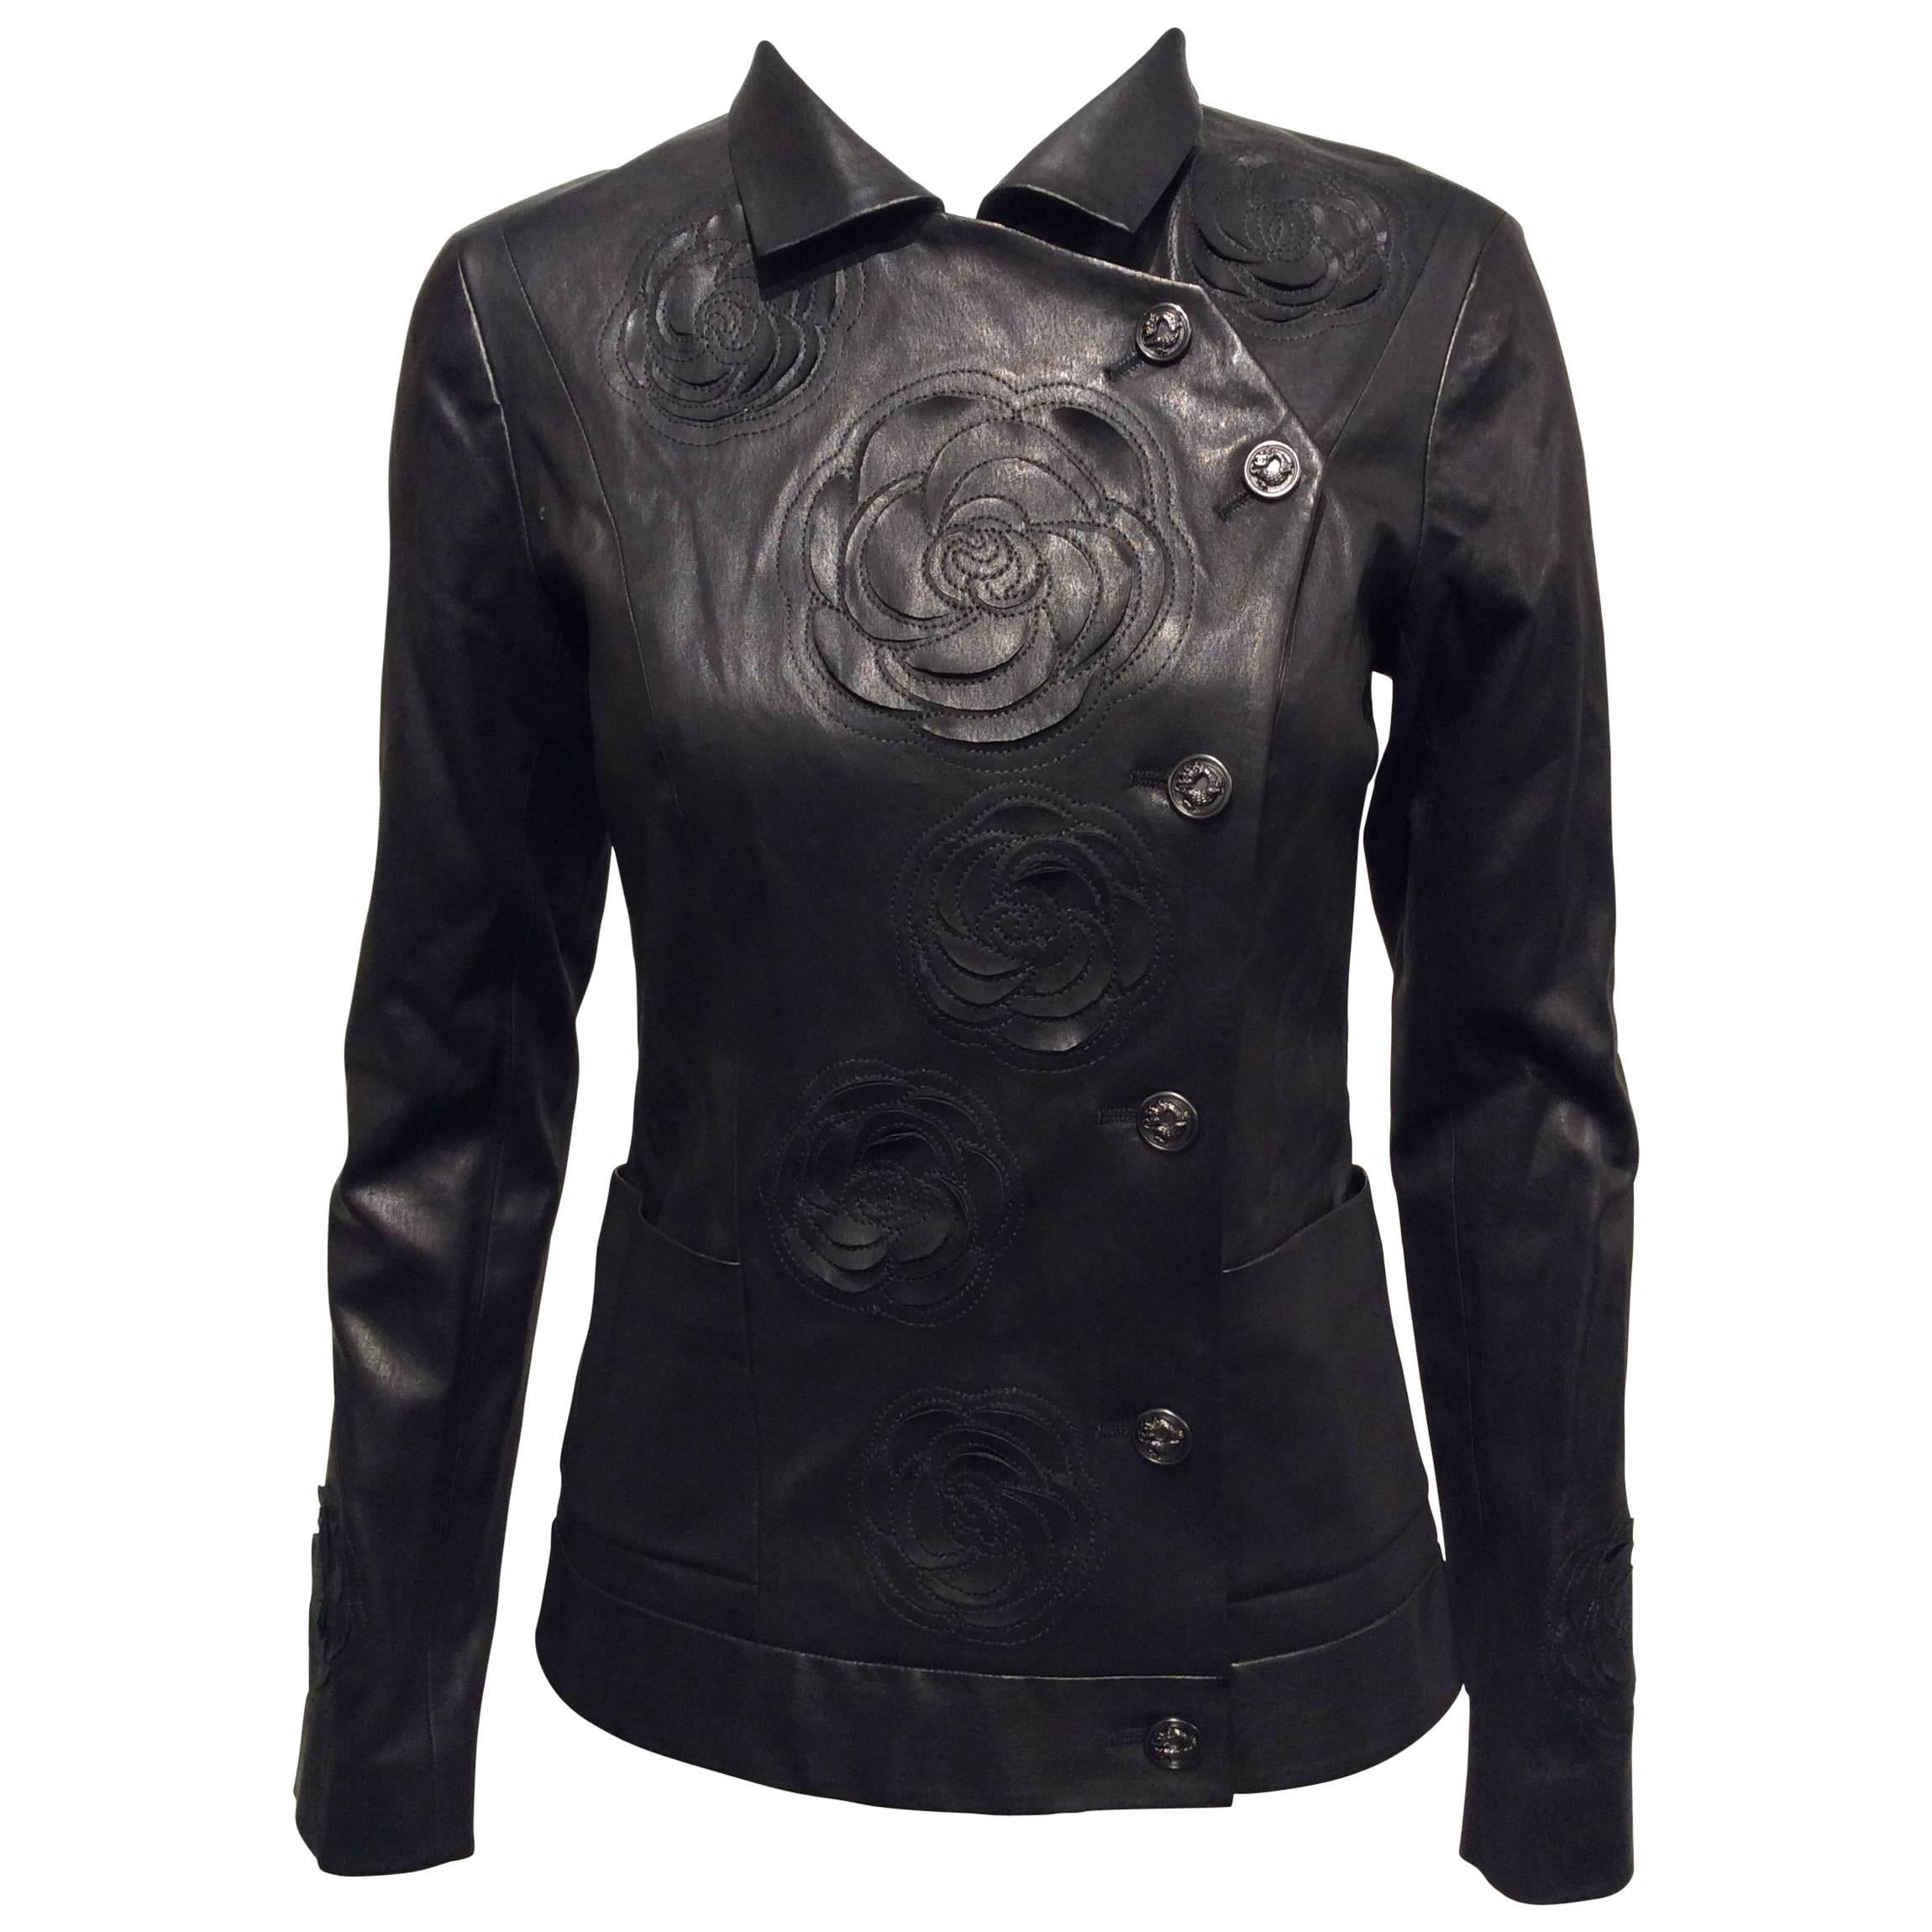 Chanel Black Leather Jacket With Cutout Appliqué Camellias Sz 36 (US 4)